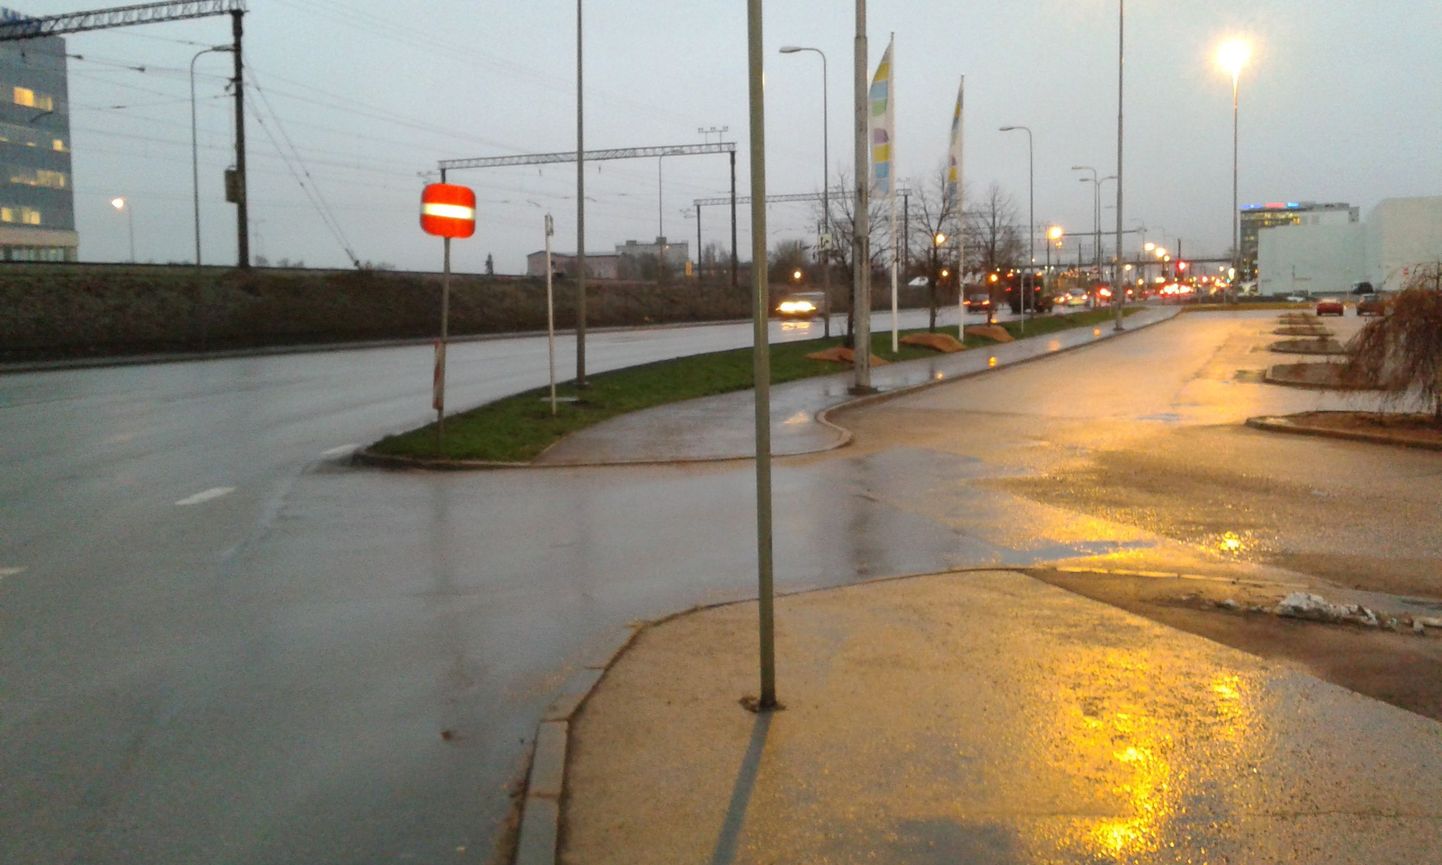 Suur-Sõjamäe tänava Tartu maantee poolses otsas on mingil põhjusel märk "Sissesõit eelatud", mida kõik sõidukijuhid üksmeelselt eiravad.